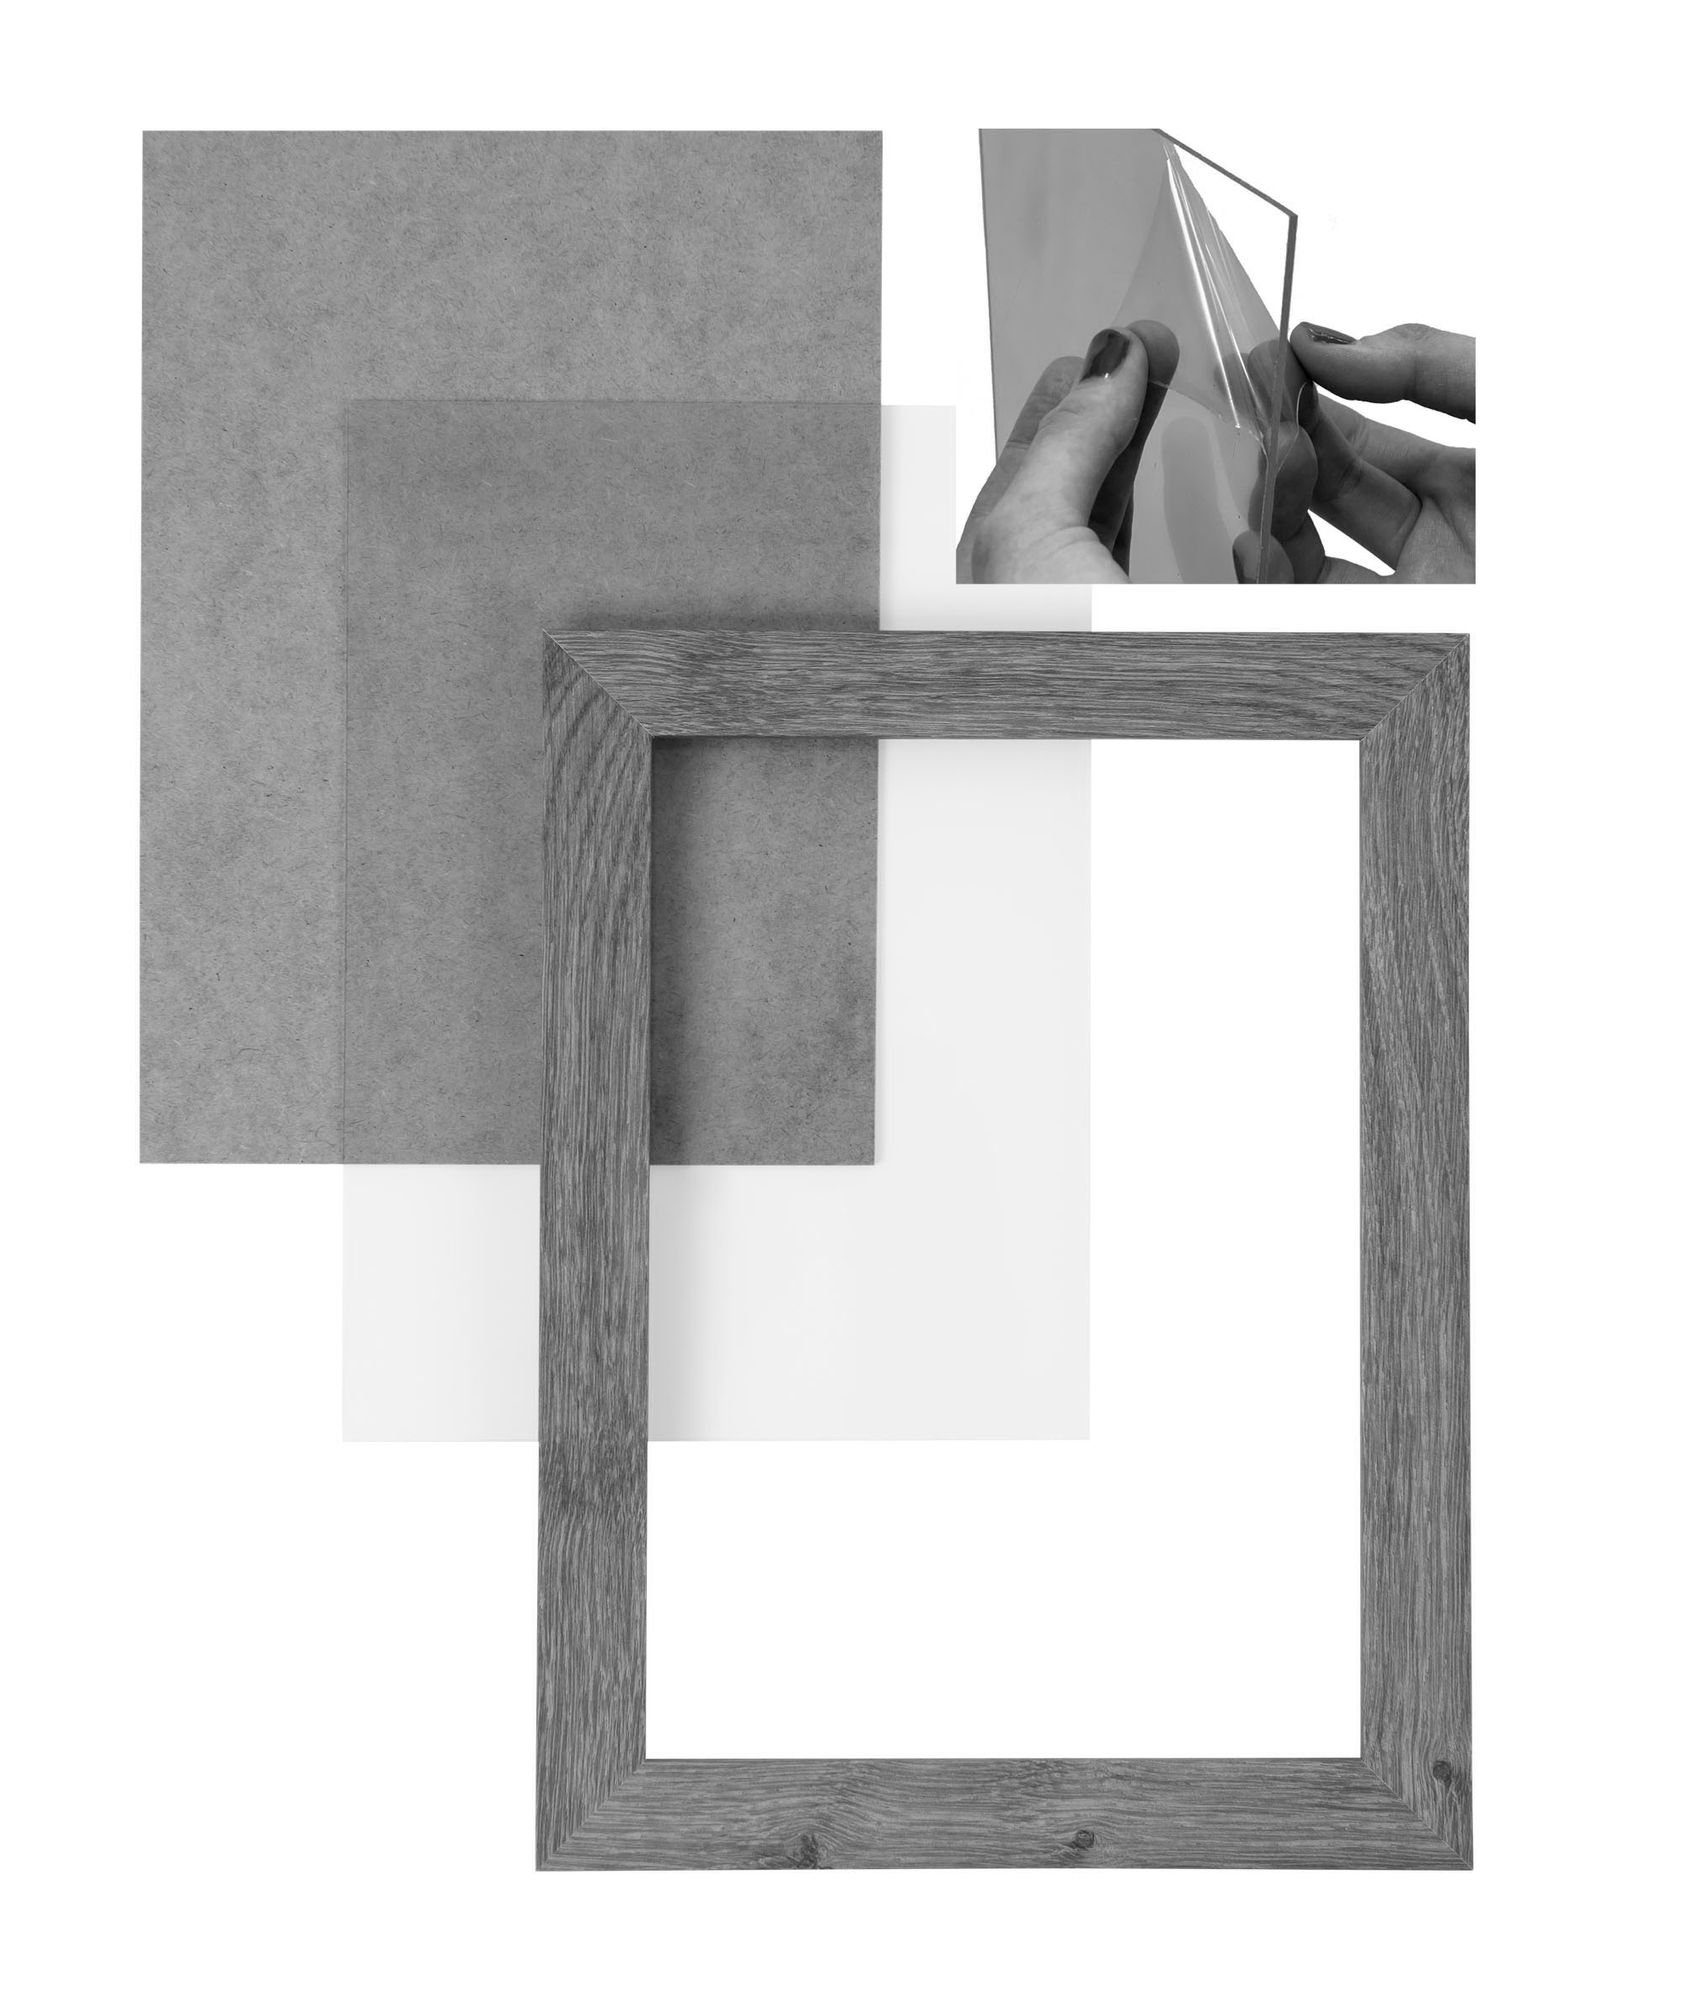 Moderner Aufhänger MDF silber Acrylglas, nach Maß Clamaro handgefertigt und eckiger CLAMARO in 'Collage' 35x75 Bilderrahmen FSC® Rückwand Rahmen inkl. Bilderrahmen gebürstet Holz